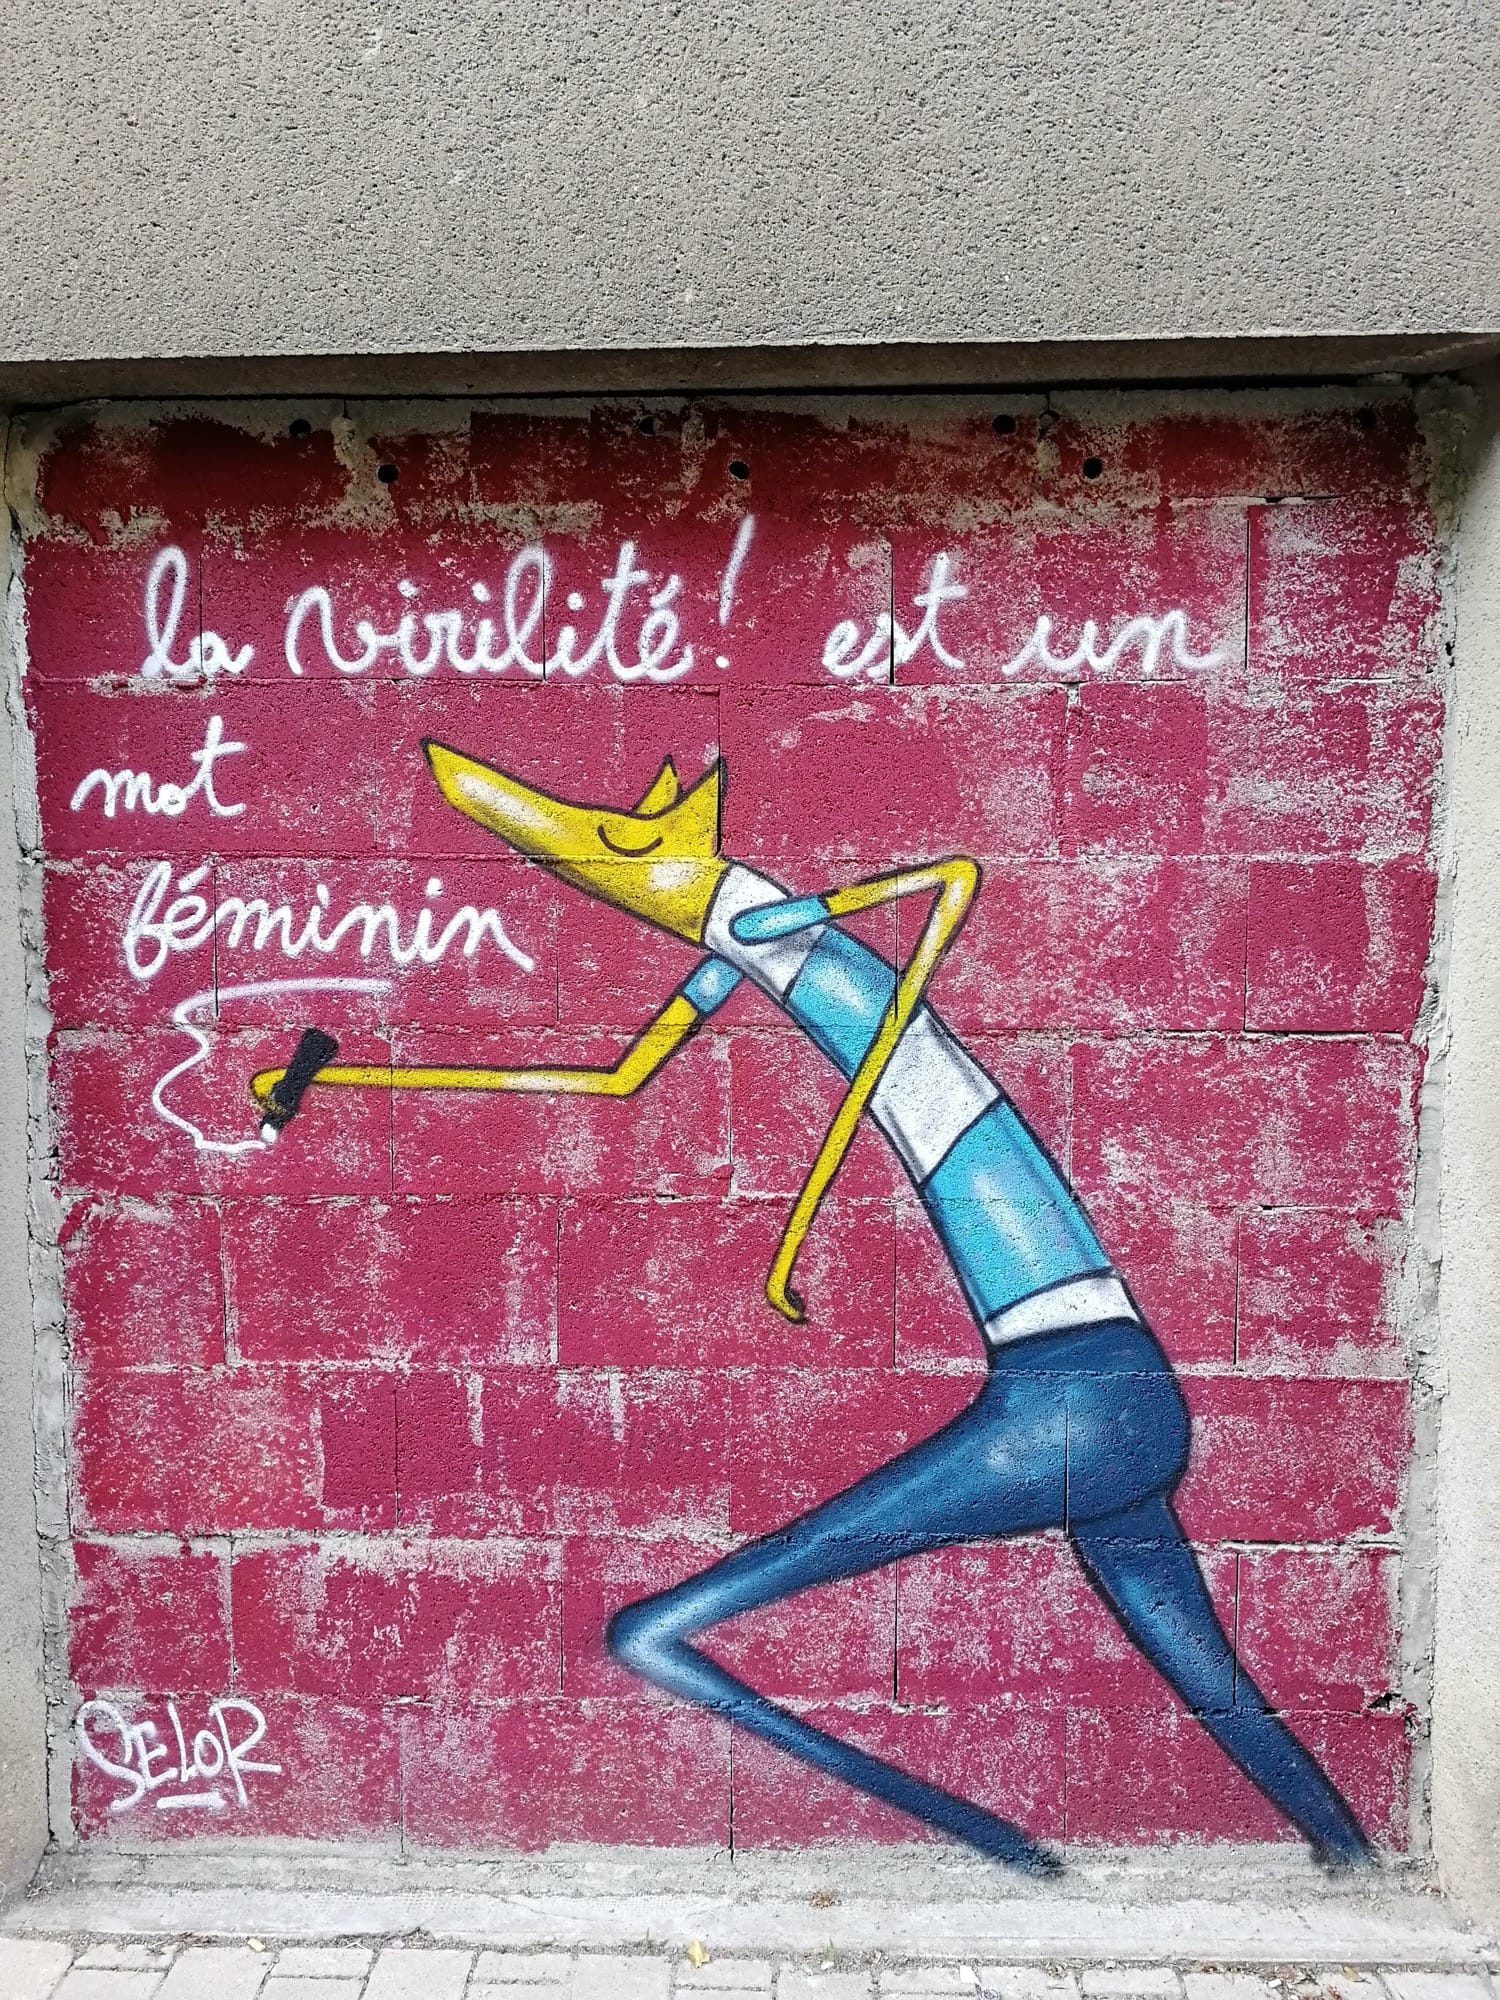 Graffiti 2979 La virilité est un mot féminin de Selor capturé par Rabot à Nantes France